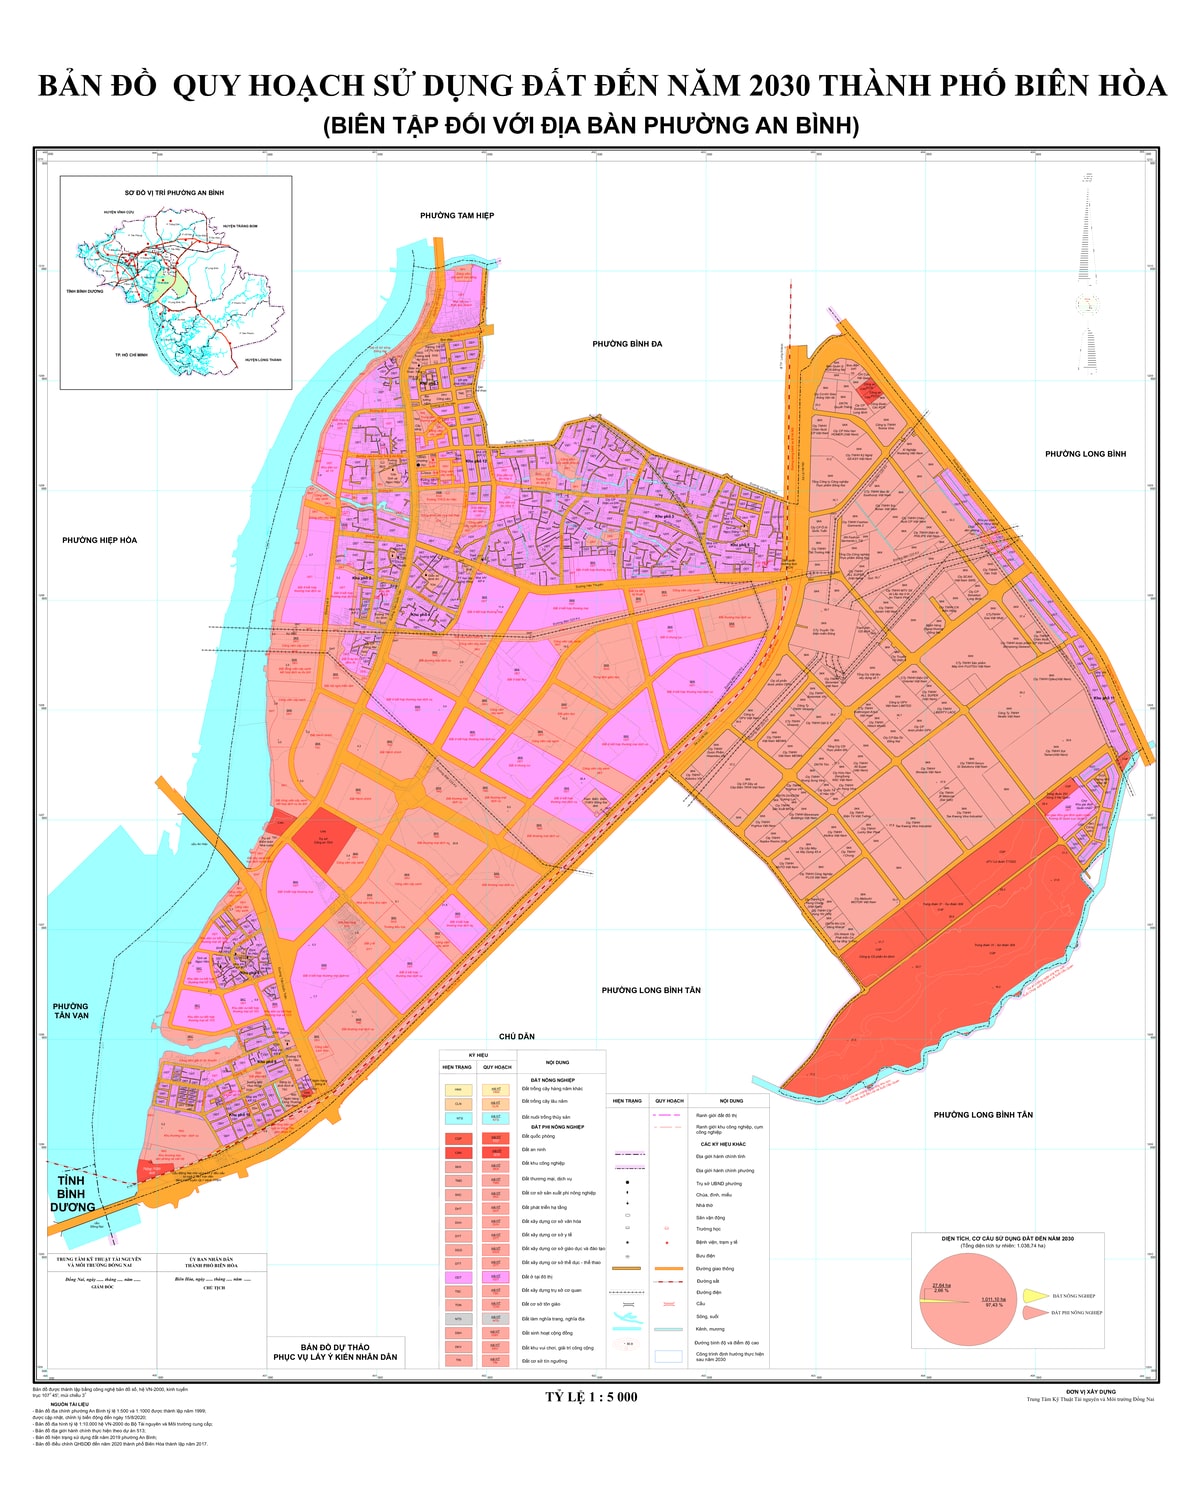 Bản đồ quy hoạch phường An Bình, thành phố Biên Hòa, tỉnh Đồng Nai đến năm 2030